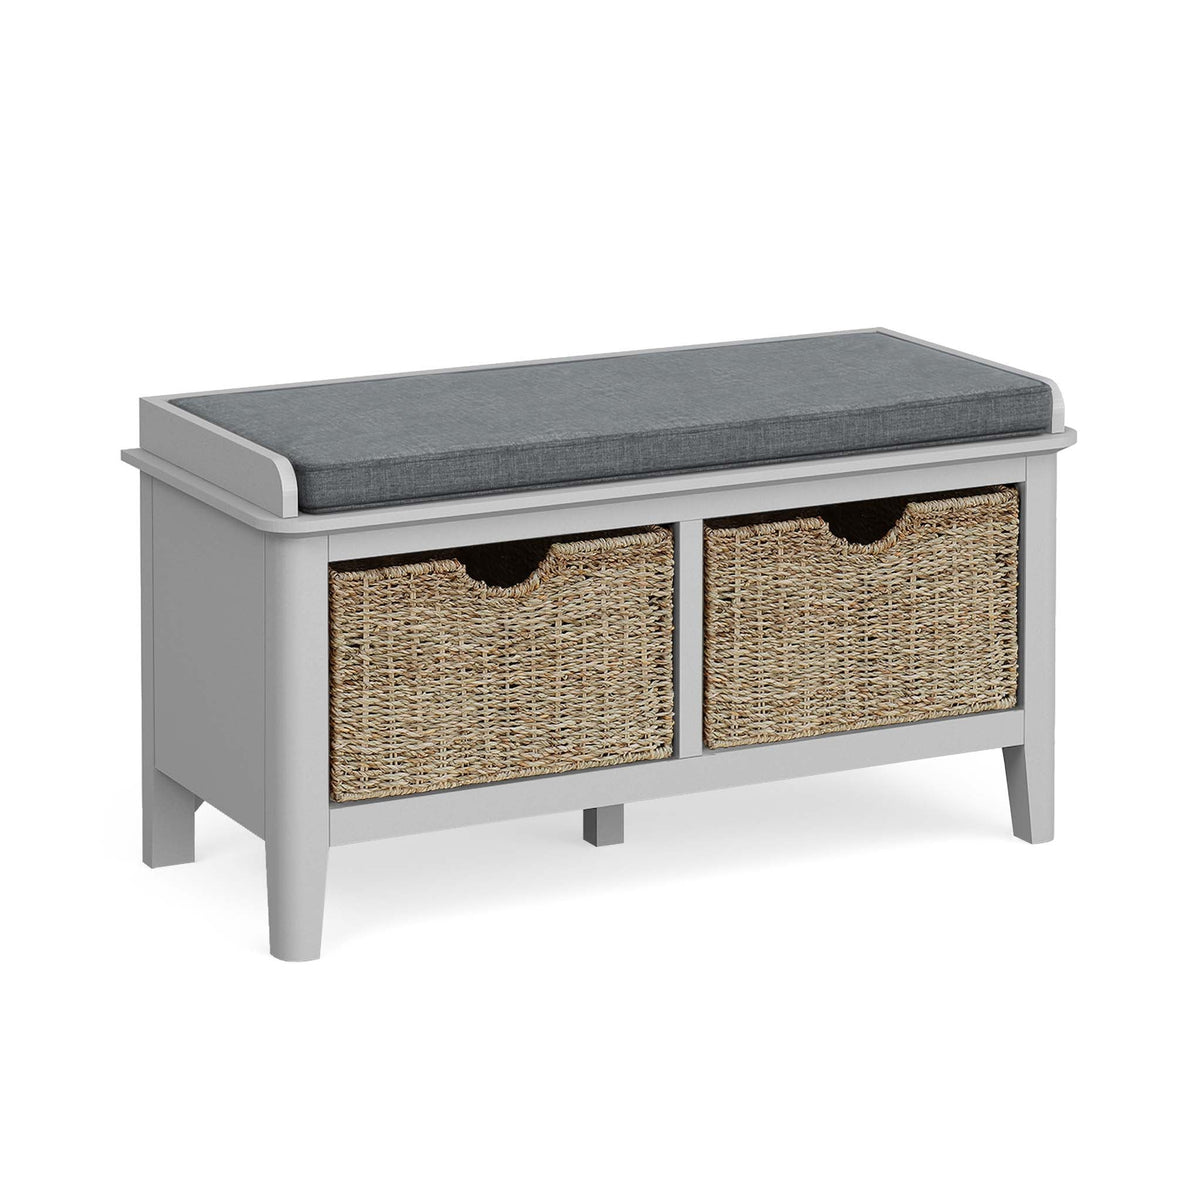 Elgin Grey Storage Bench from Roseland Furniture